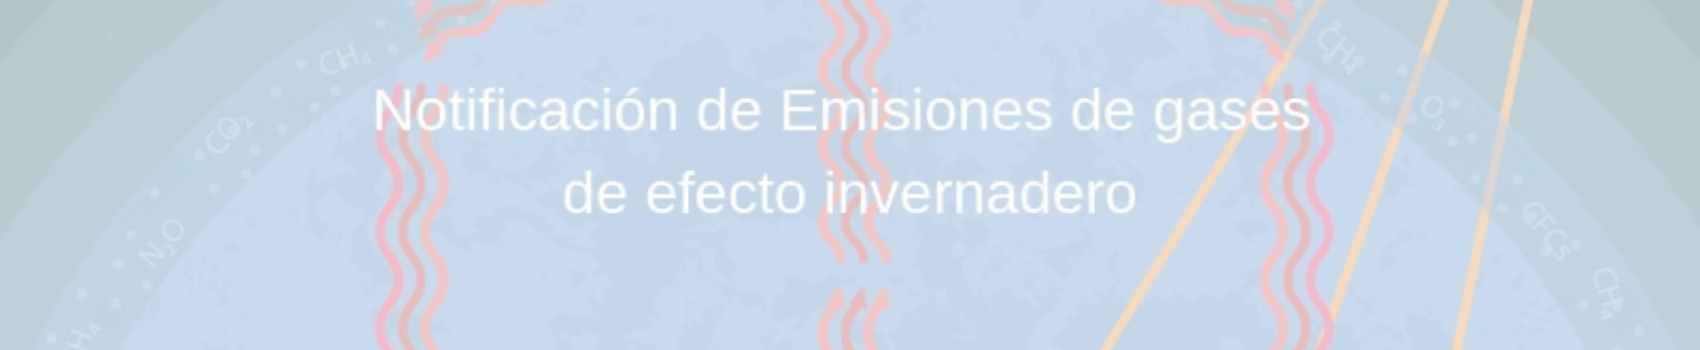 Notificación-de-Emisiones-de-gases-de-efecto-invernadero-Blog